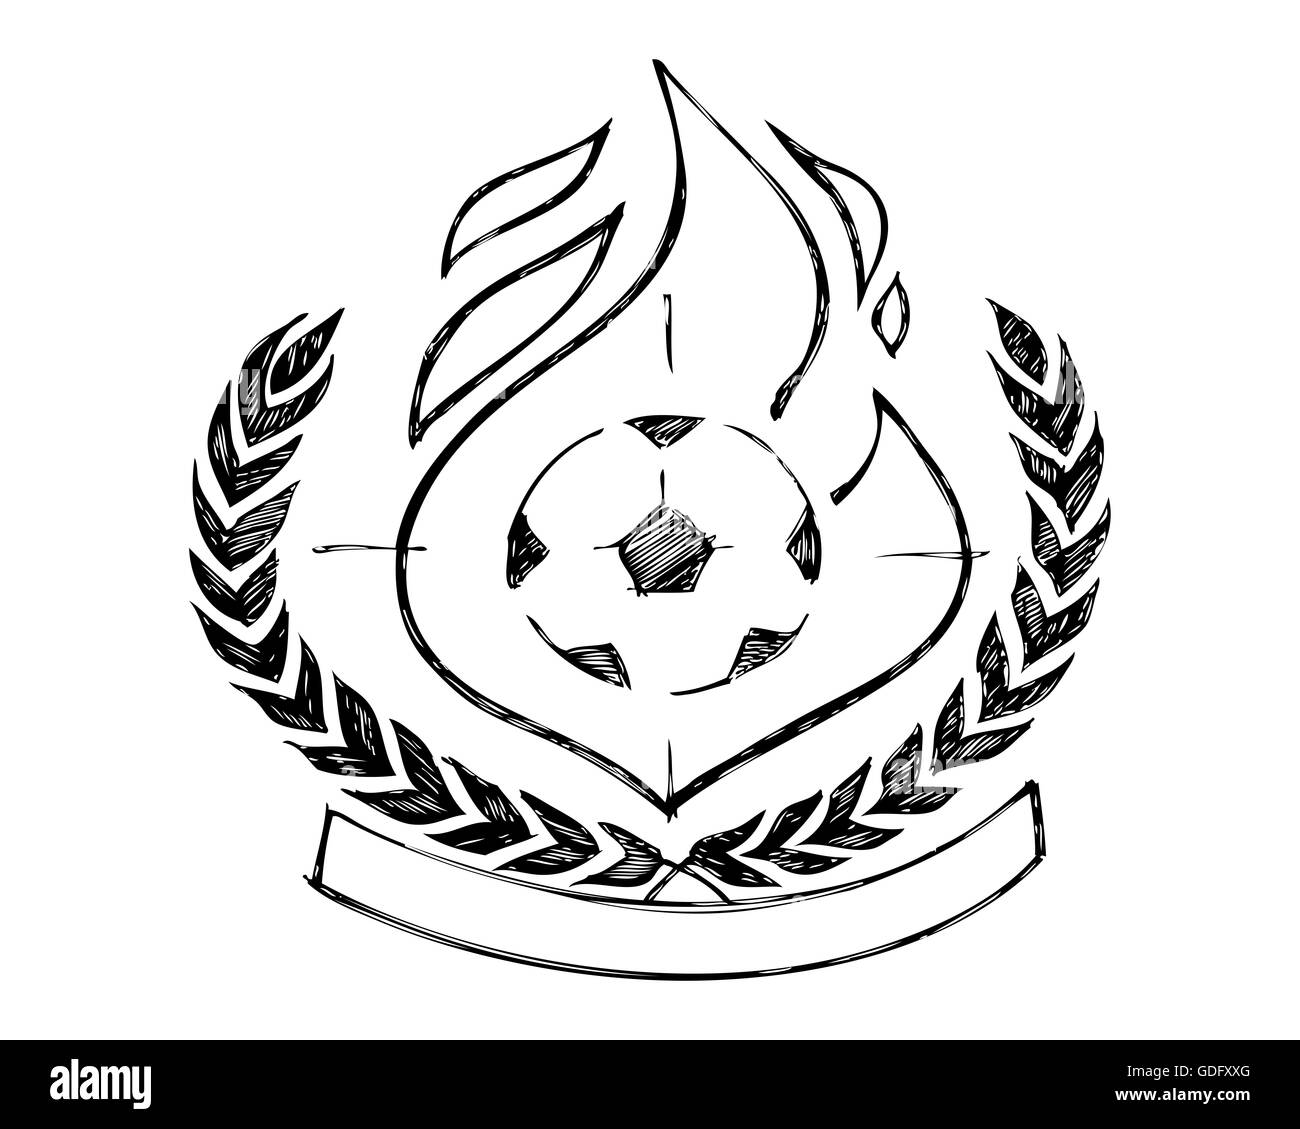 Handgezeichnete Illustrationen oder Zeichnung eines Fußball Sieg Abzeichen oder symbol Stockfoto